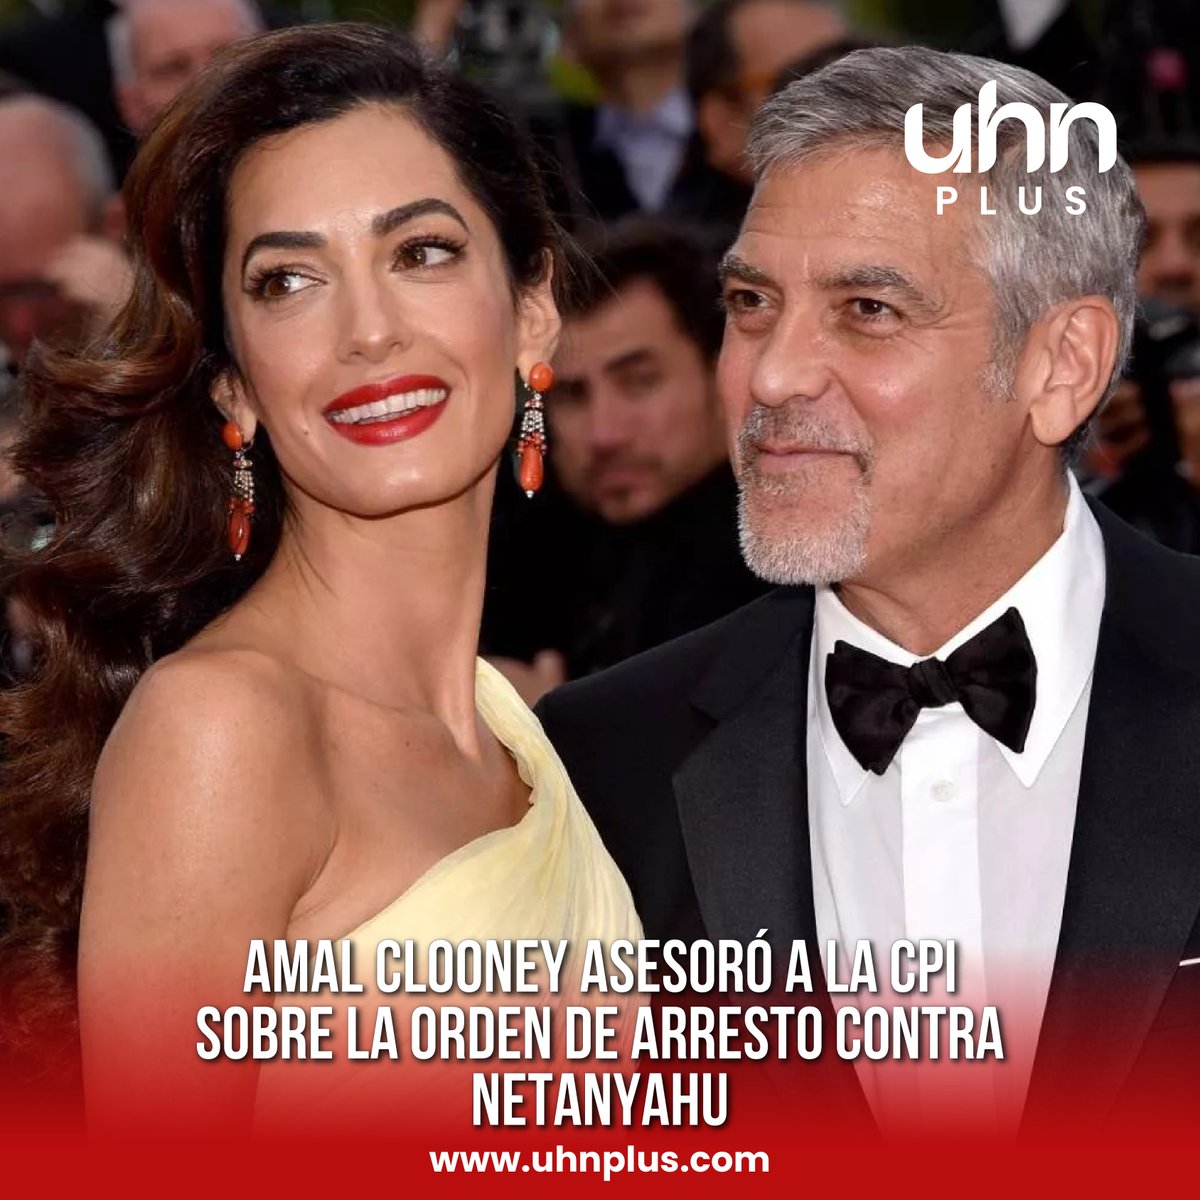 🇺🇸🇮🇱 | LO ÚLTIMO

Amal Clooney, esposa de George Clooney, fue una de las abogadas que asesoró a la CPI en la emisión de una orden de arresto contra Netanyahu. 

La destacada abogada de derechos humanos participó en el proceso legal que llevó a esta decisión histórica.